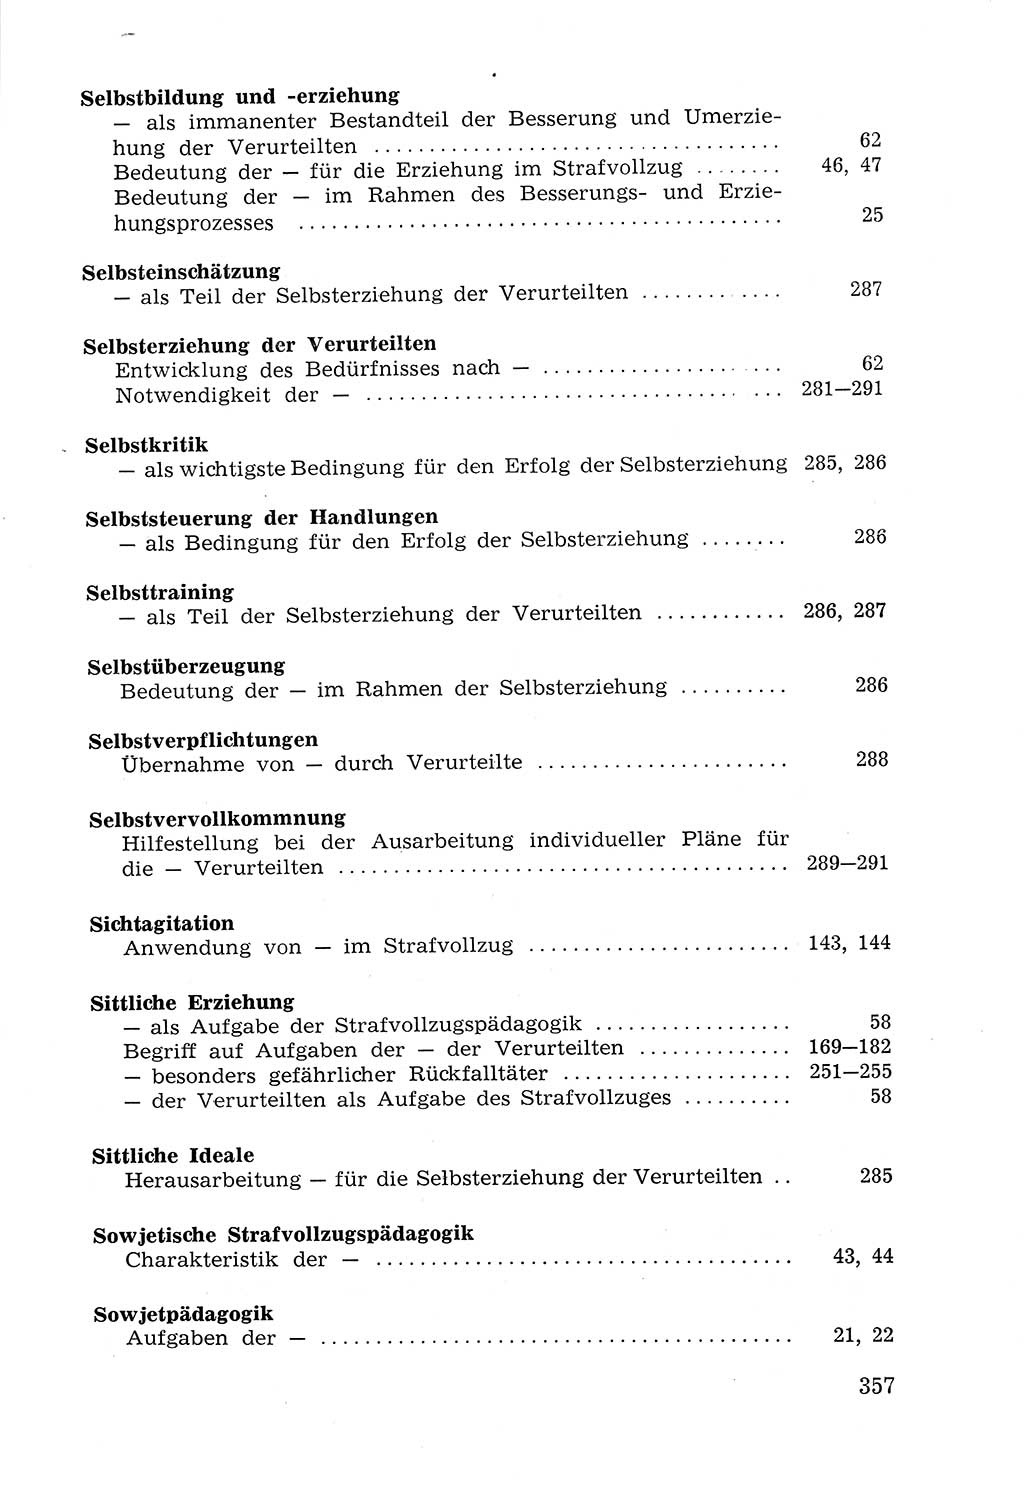 Lehrbuch der Strafvollzugspädagogik [Deutsche Demokratische Republik (DDR)] 1969, Seite 357 (Lb. SV-Pd. DDR 1969, S. 357)